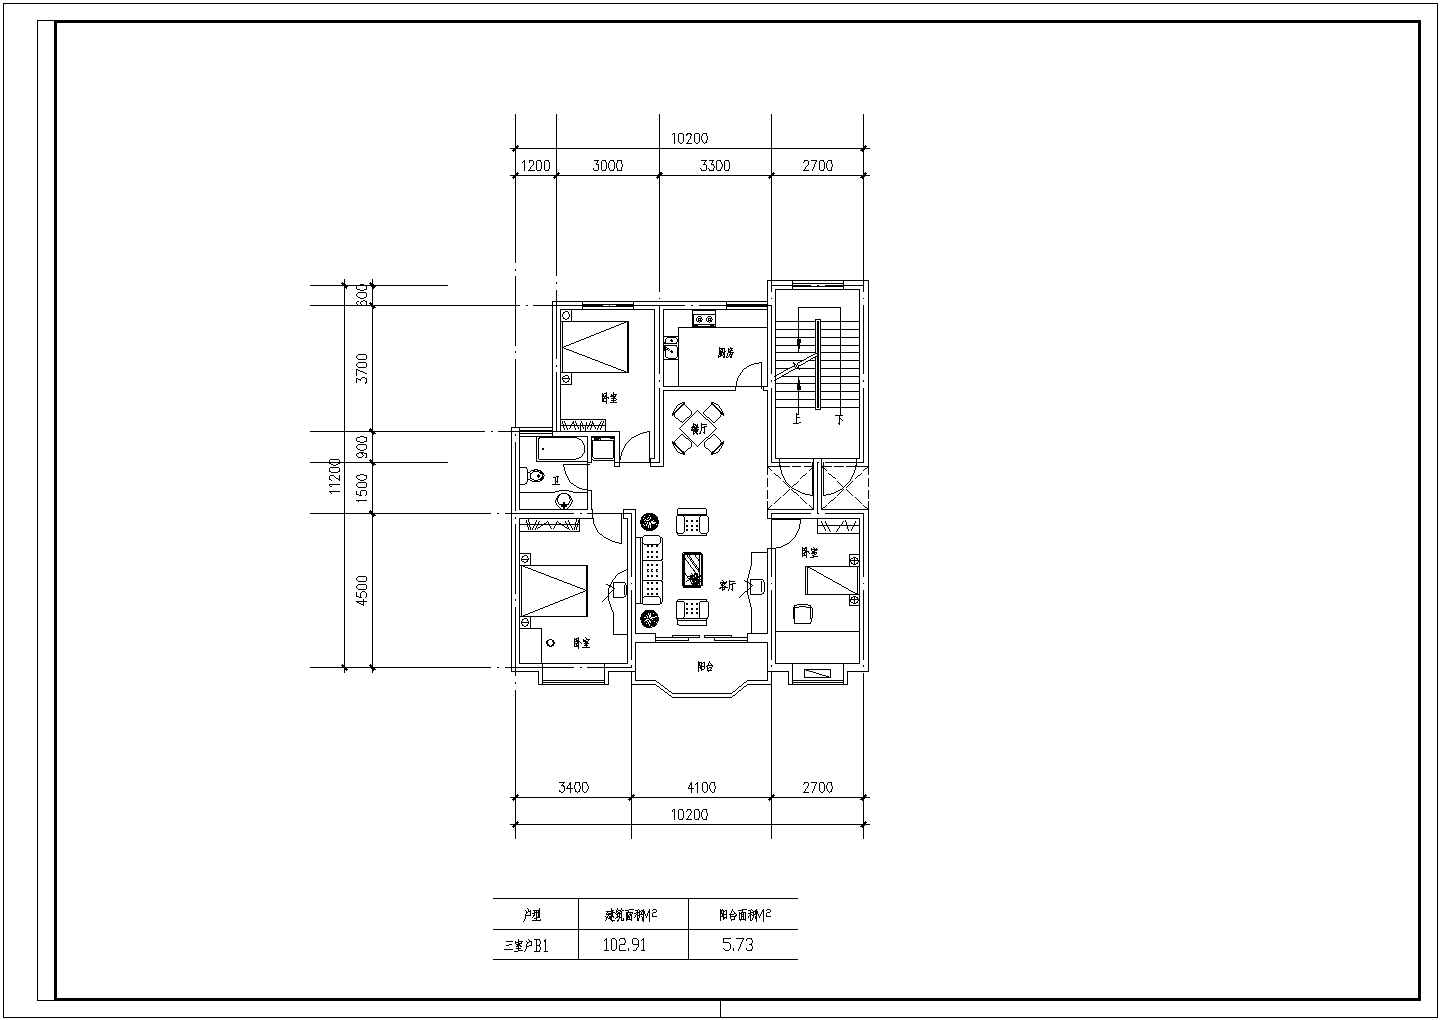 100至180平方米的户型公寓楼全套施工设计cad图纸